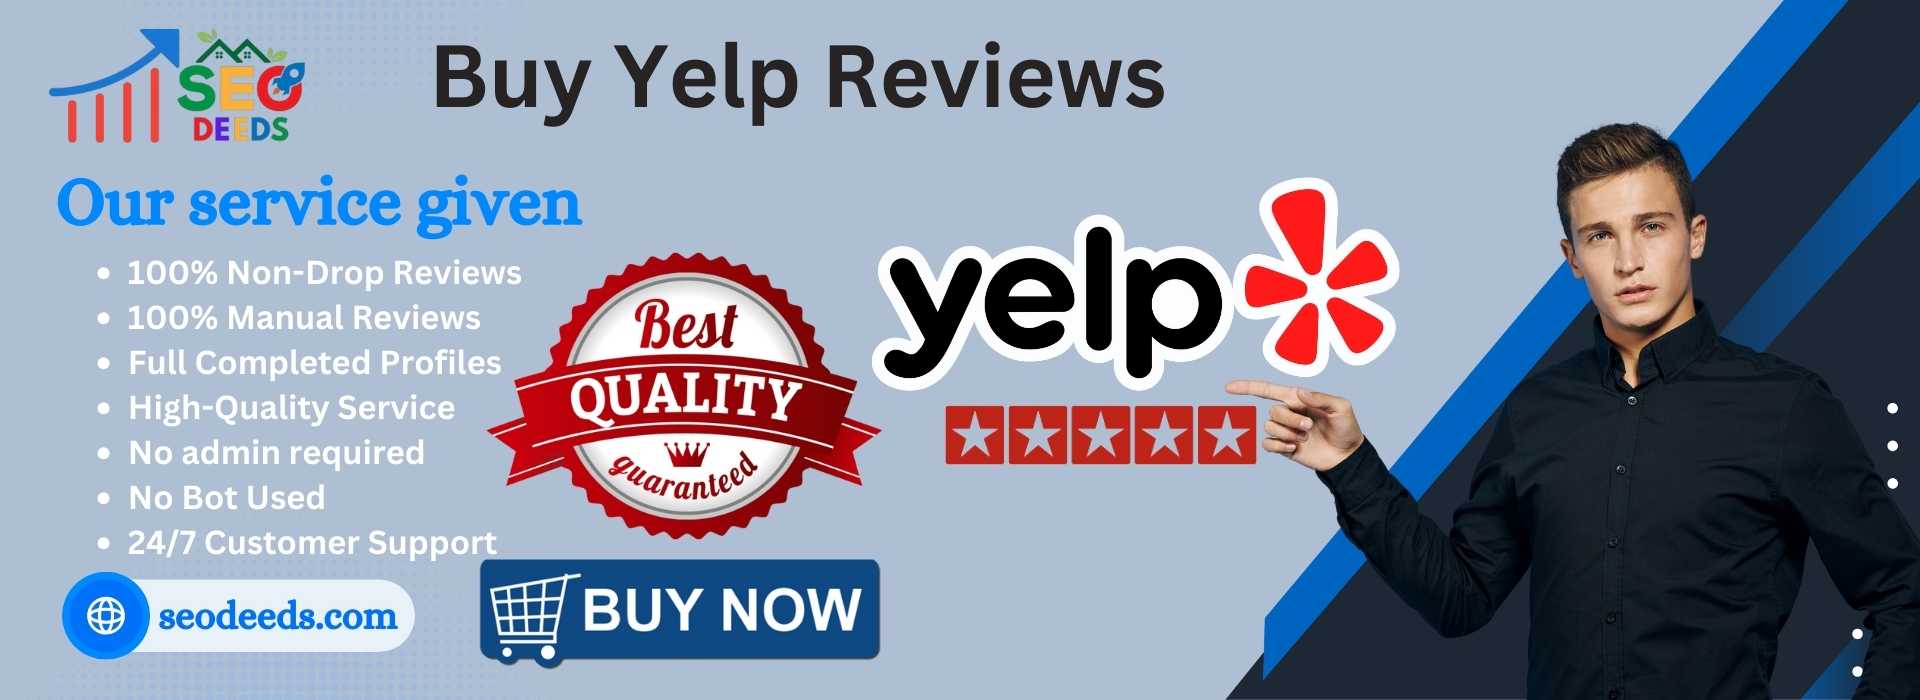 Buy Yelp Reviews3